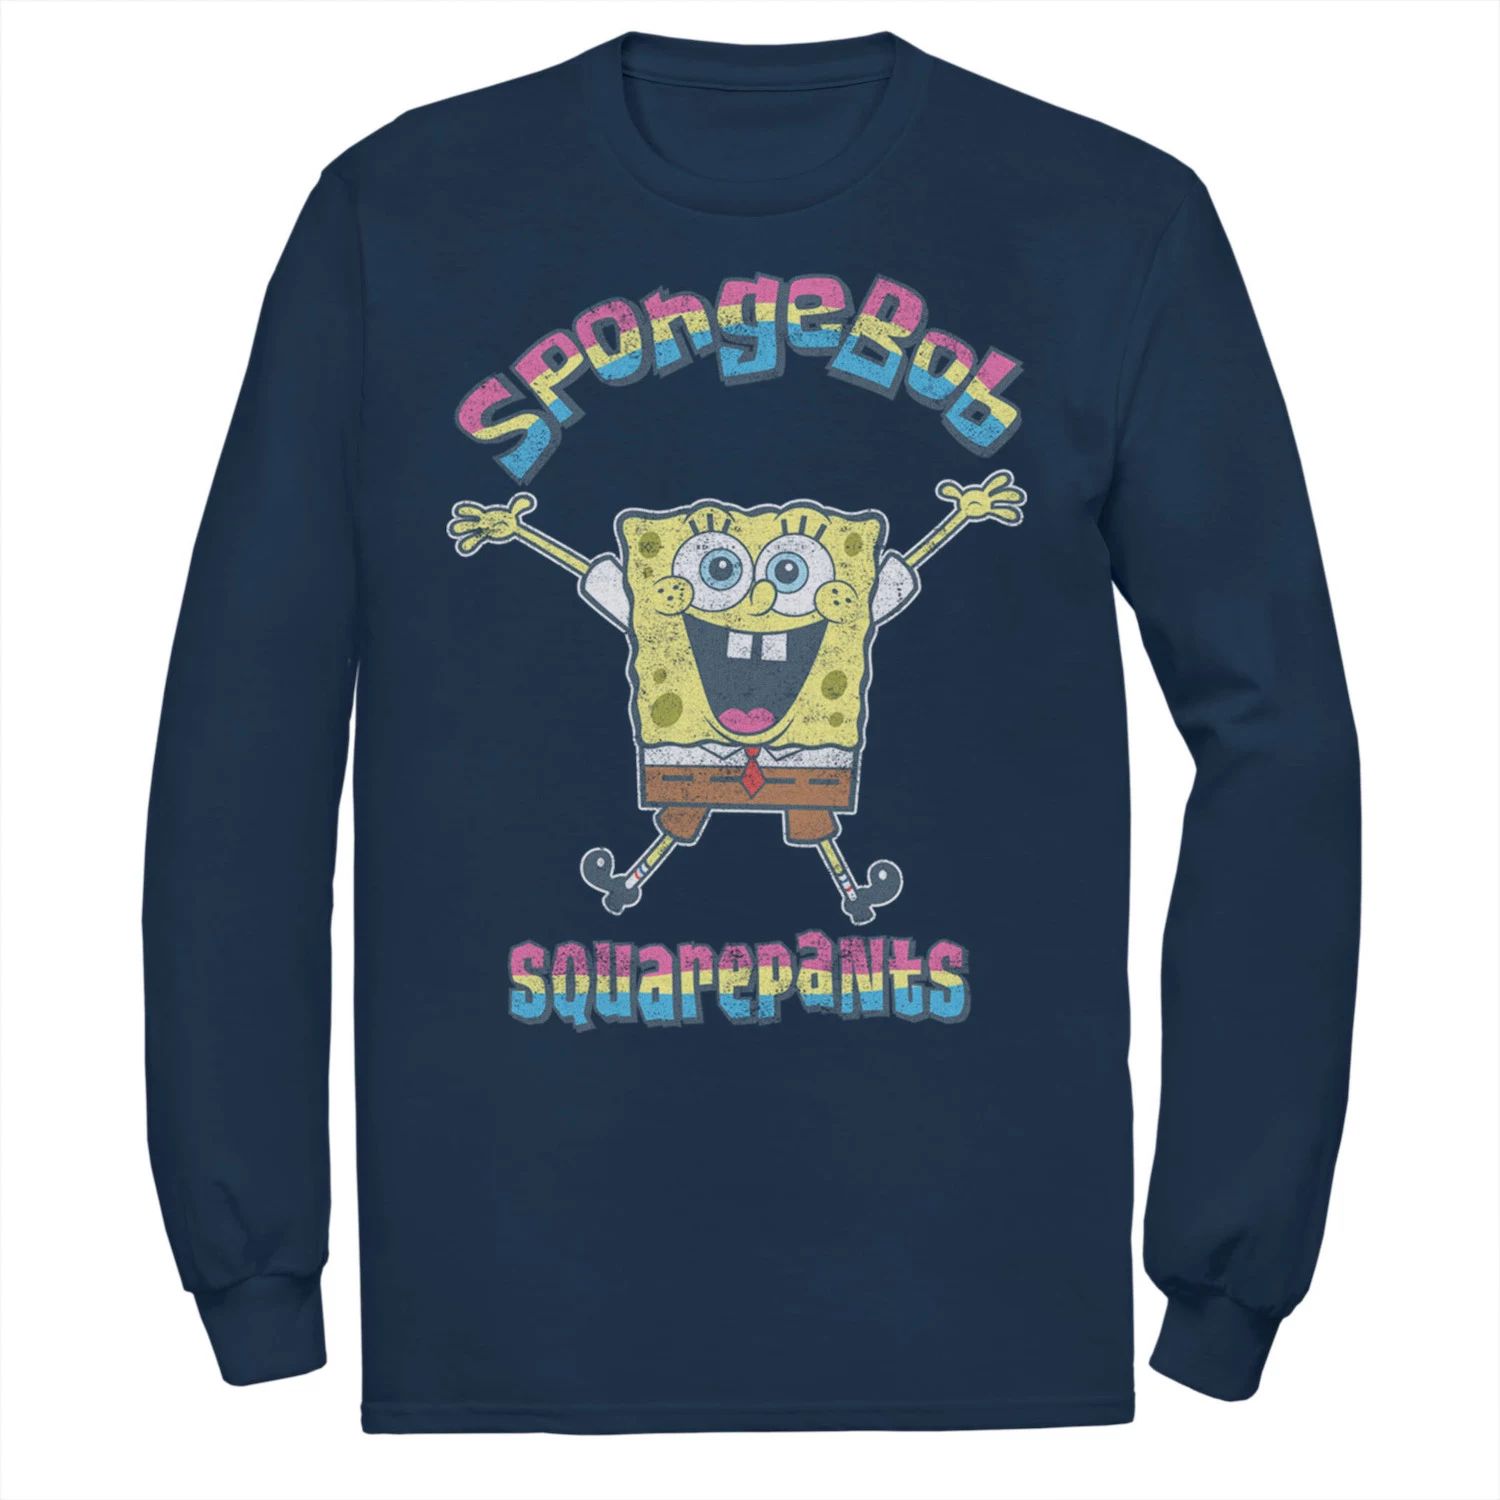 Мужская футболка с радужным логотипом Sponge Bob SquarePants Nickelodeon цена и фото